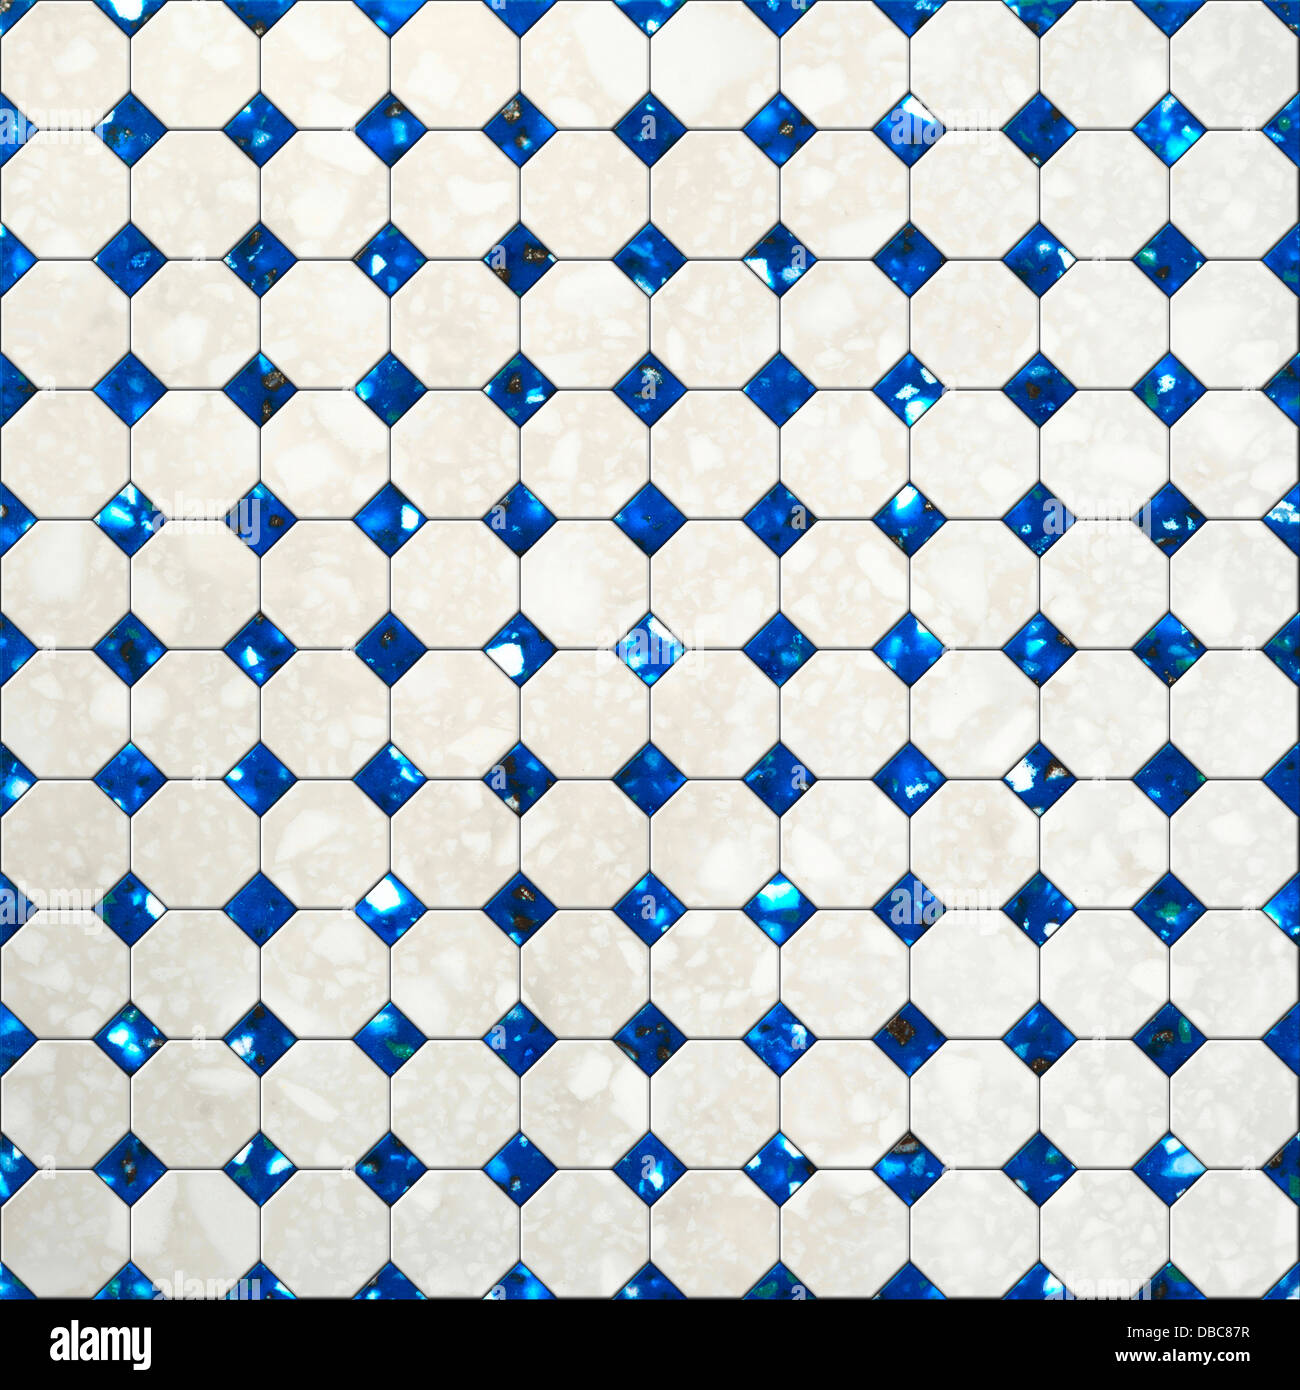 Tile mosaic background Stock Photo